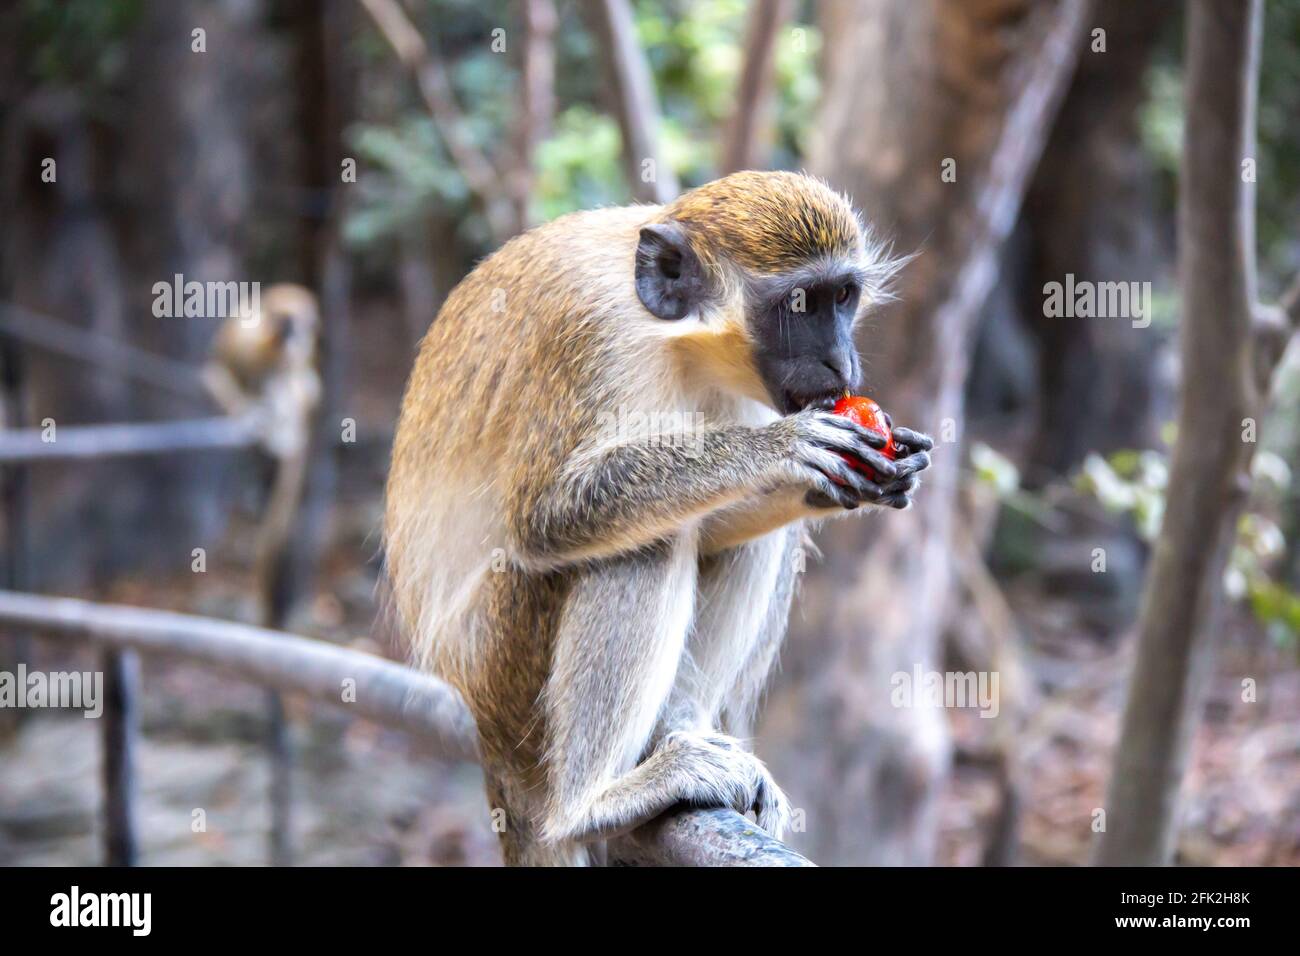 Una scimmia verde giovanile seduta su una ringhiera e mangiare frutta, una fetta matura di cocomero fresco, in Barbados, soft-focus. Foto Stock